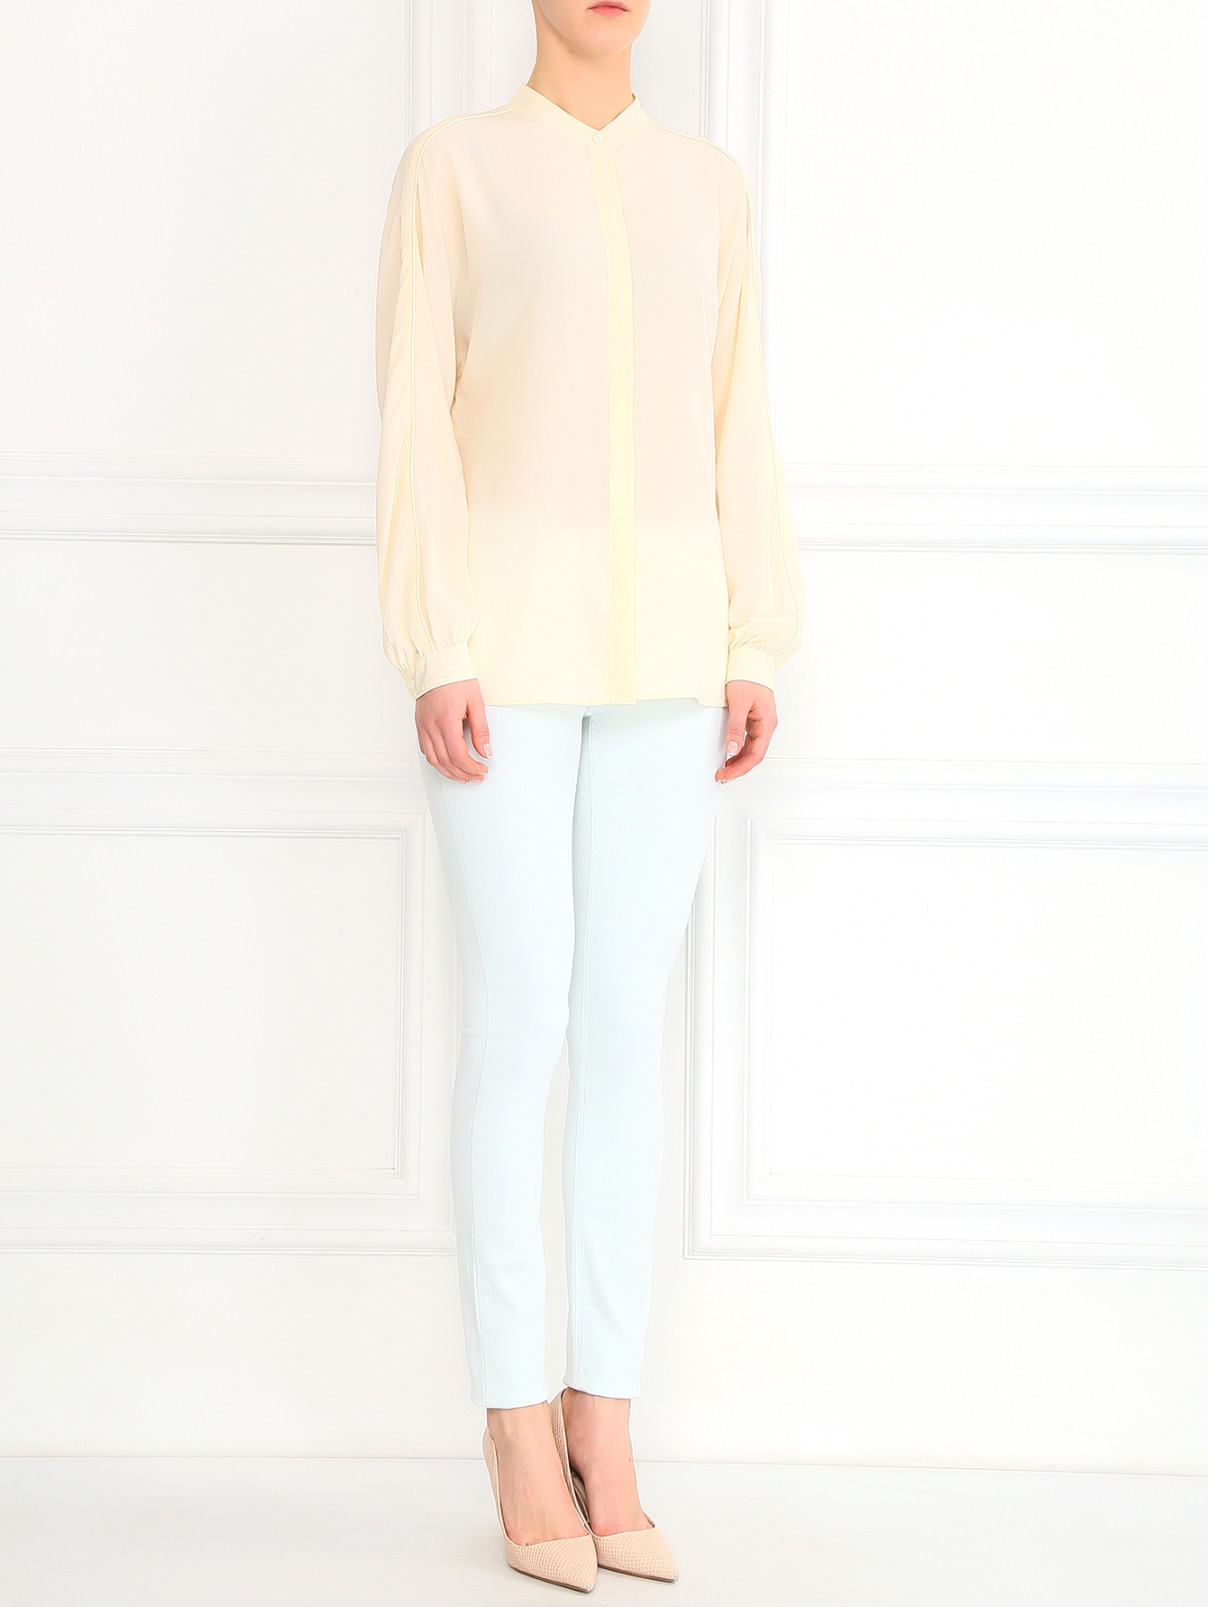 Шелковая блуза на пуговицах CLOSED  –  Модель Общий вид  – Цвет:  Бежевый